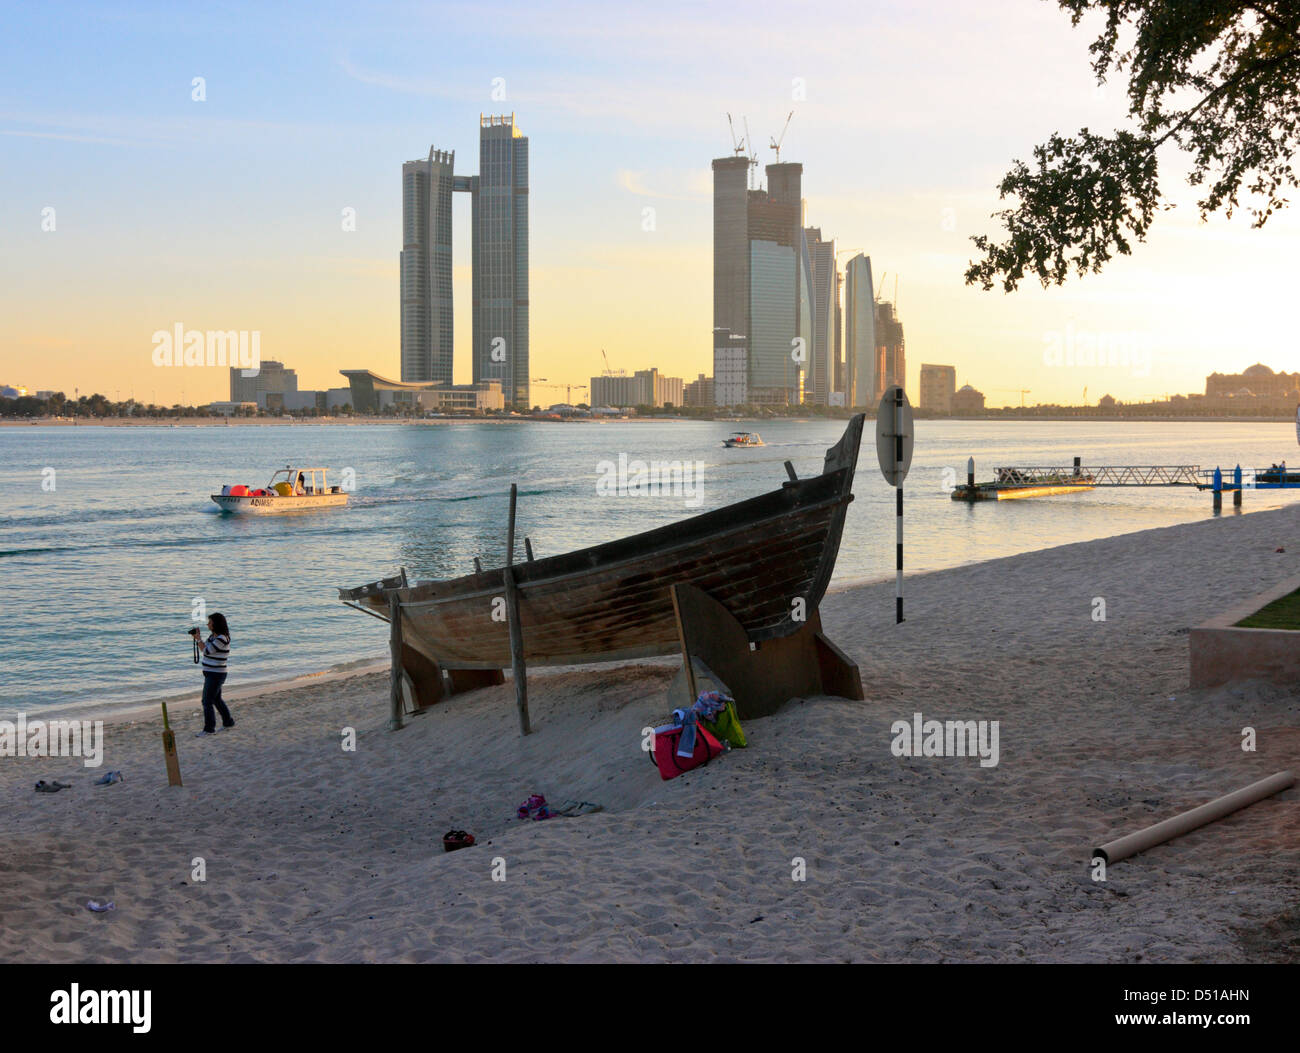 Dhaw traditionnel sur la plage, moderne d'immeubles de grande hauteur à l'arrière-plan, village du patrimoine d'Abu Dhabi, Émirats Arabes Unis Banque D'Images